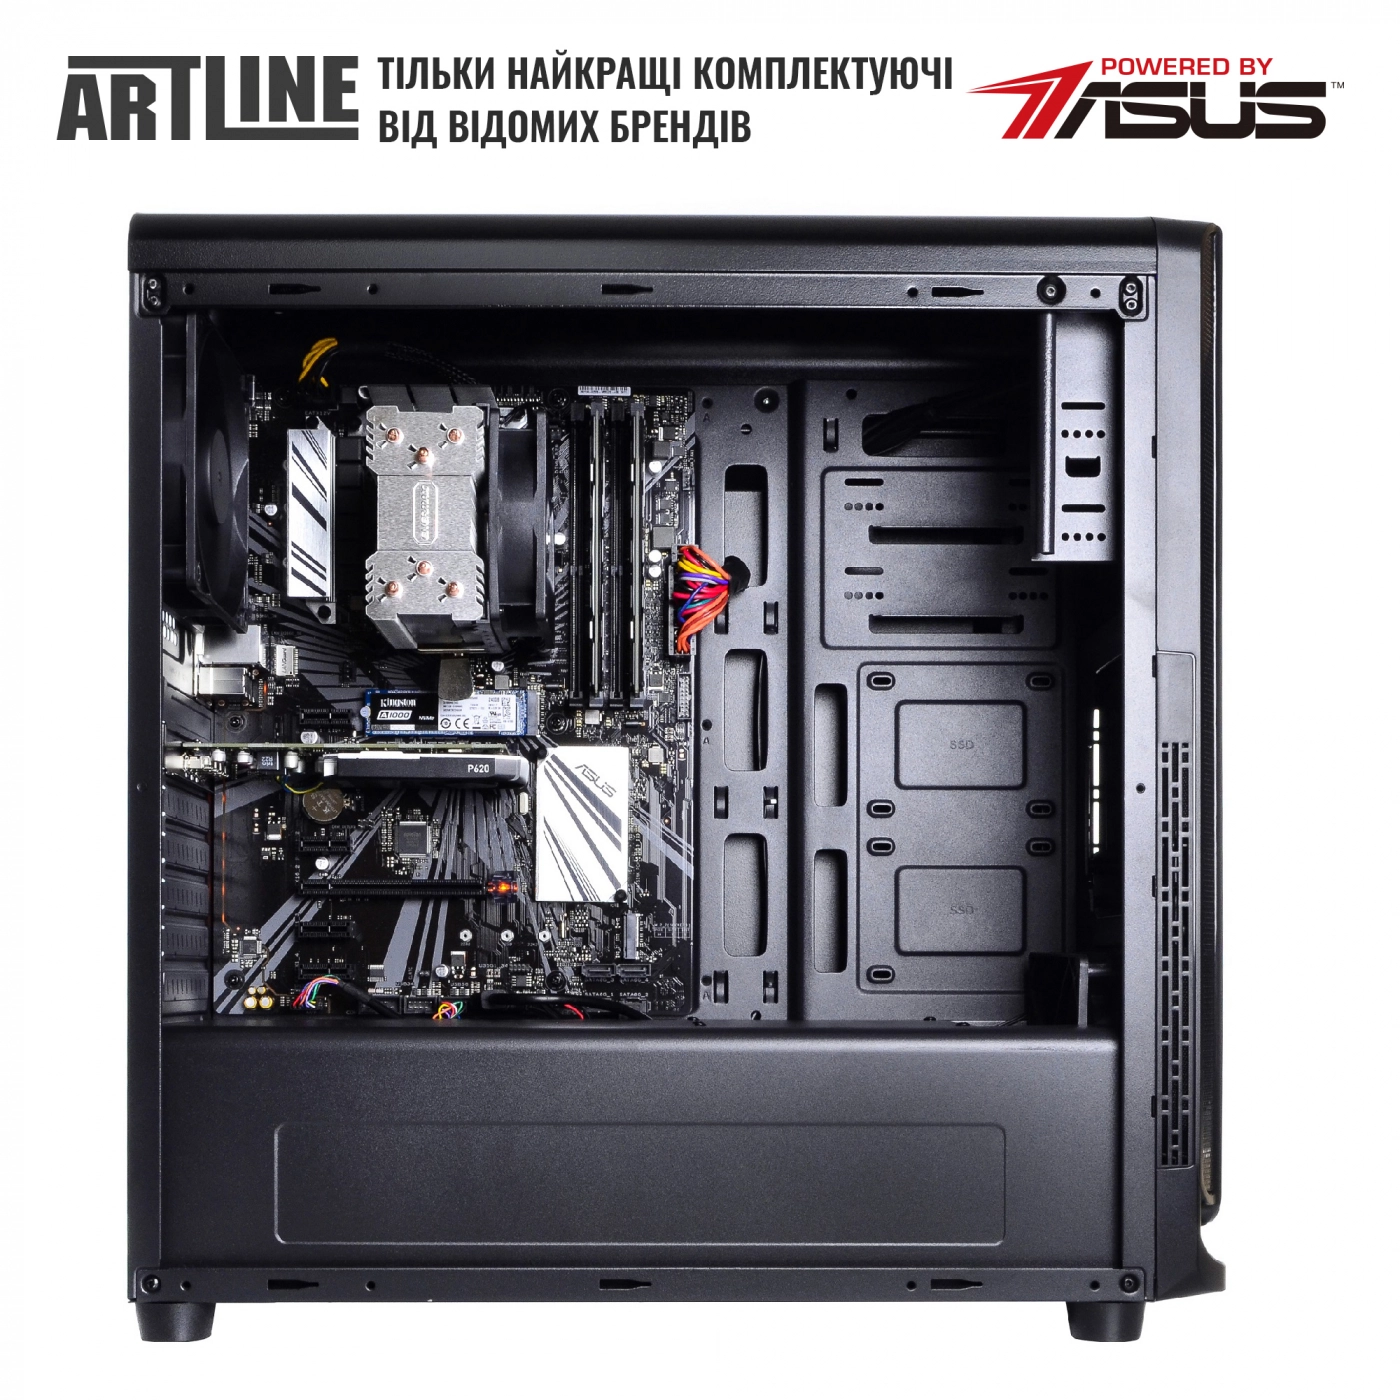 Купить Сервер ARTLINE Business T65v09 - фото 5